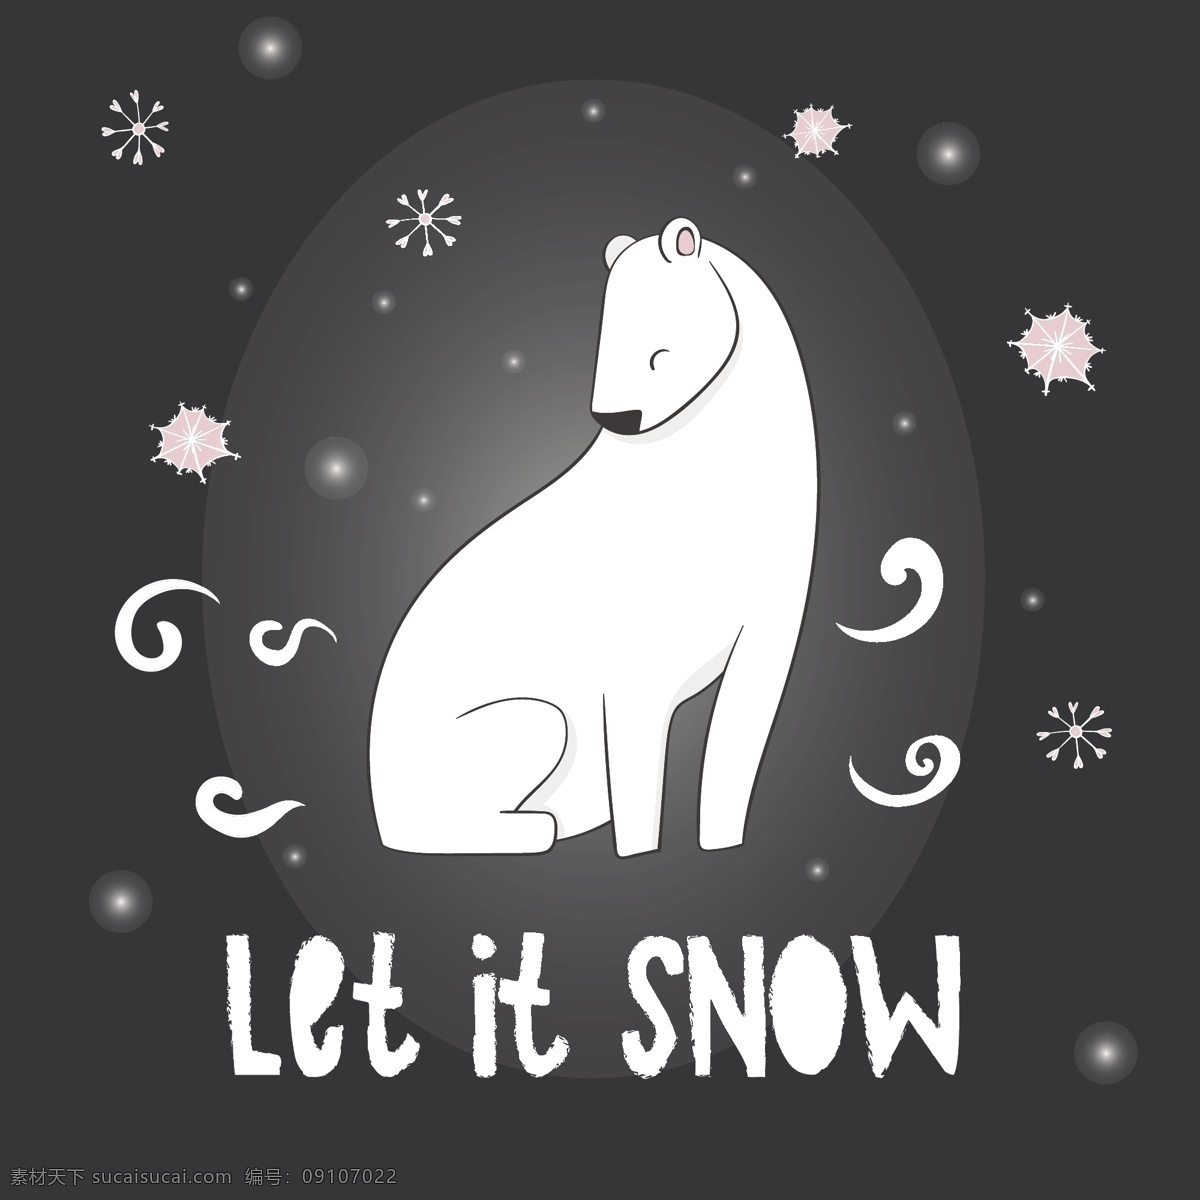 冬日 小 熊 冬天 卡通 矢量 白色 冬季 动物 节日 平面素材 设计素材 矢量素材 温暖 温馨 下雪